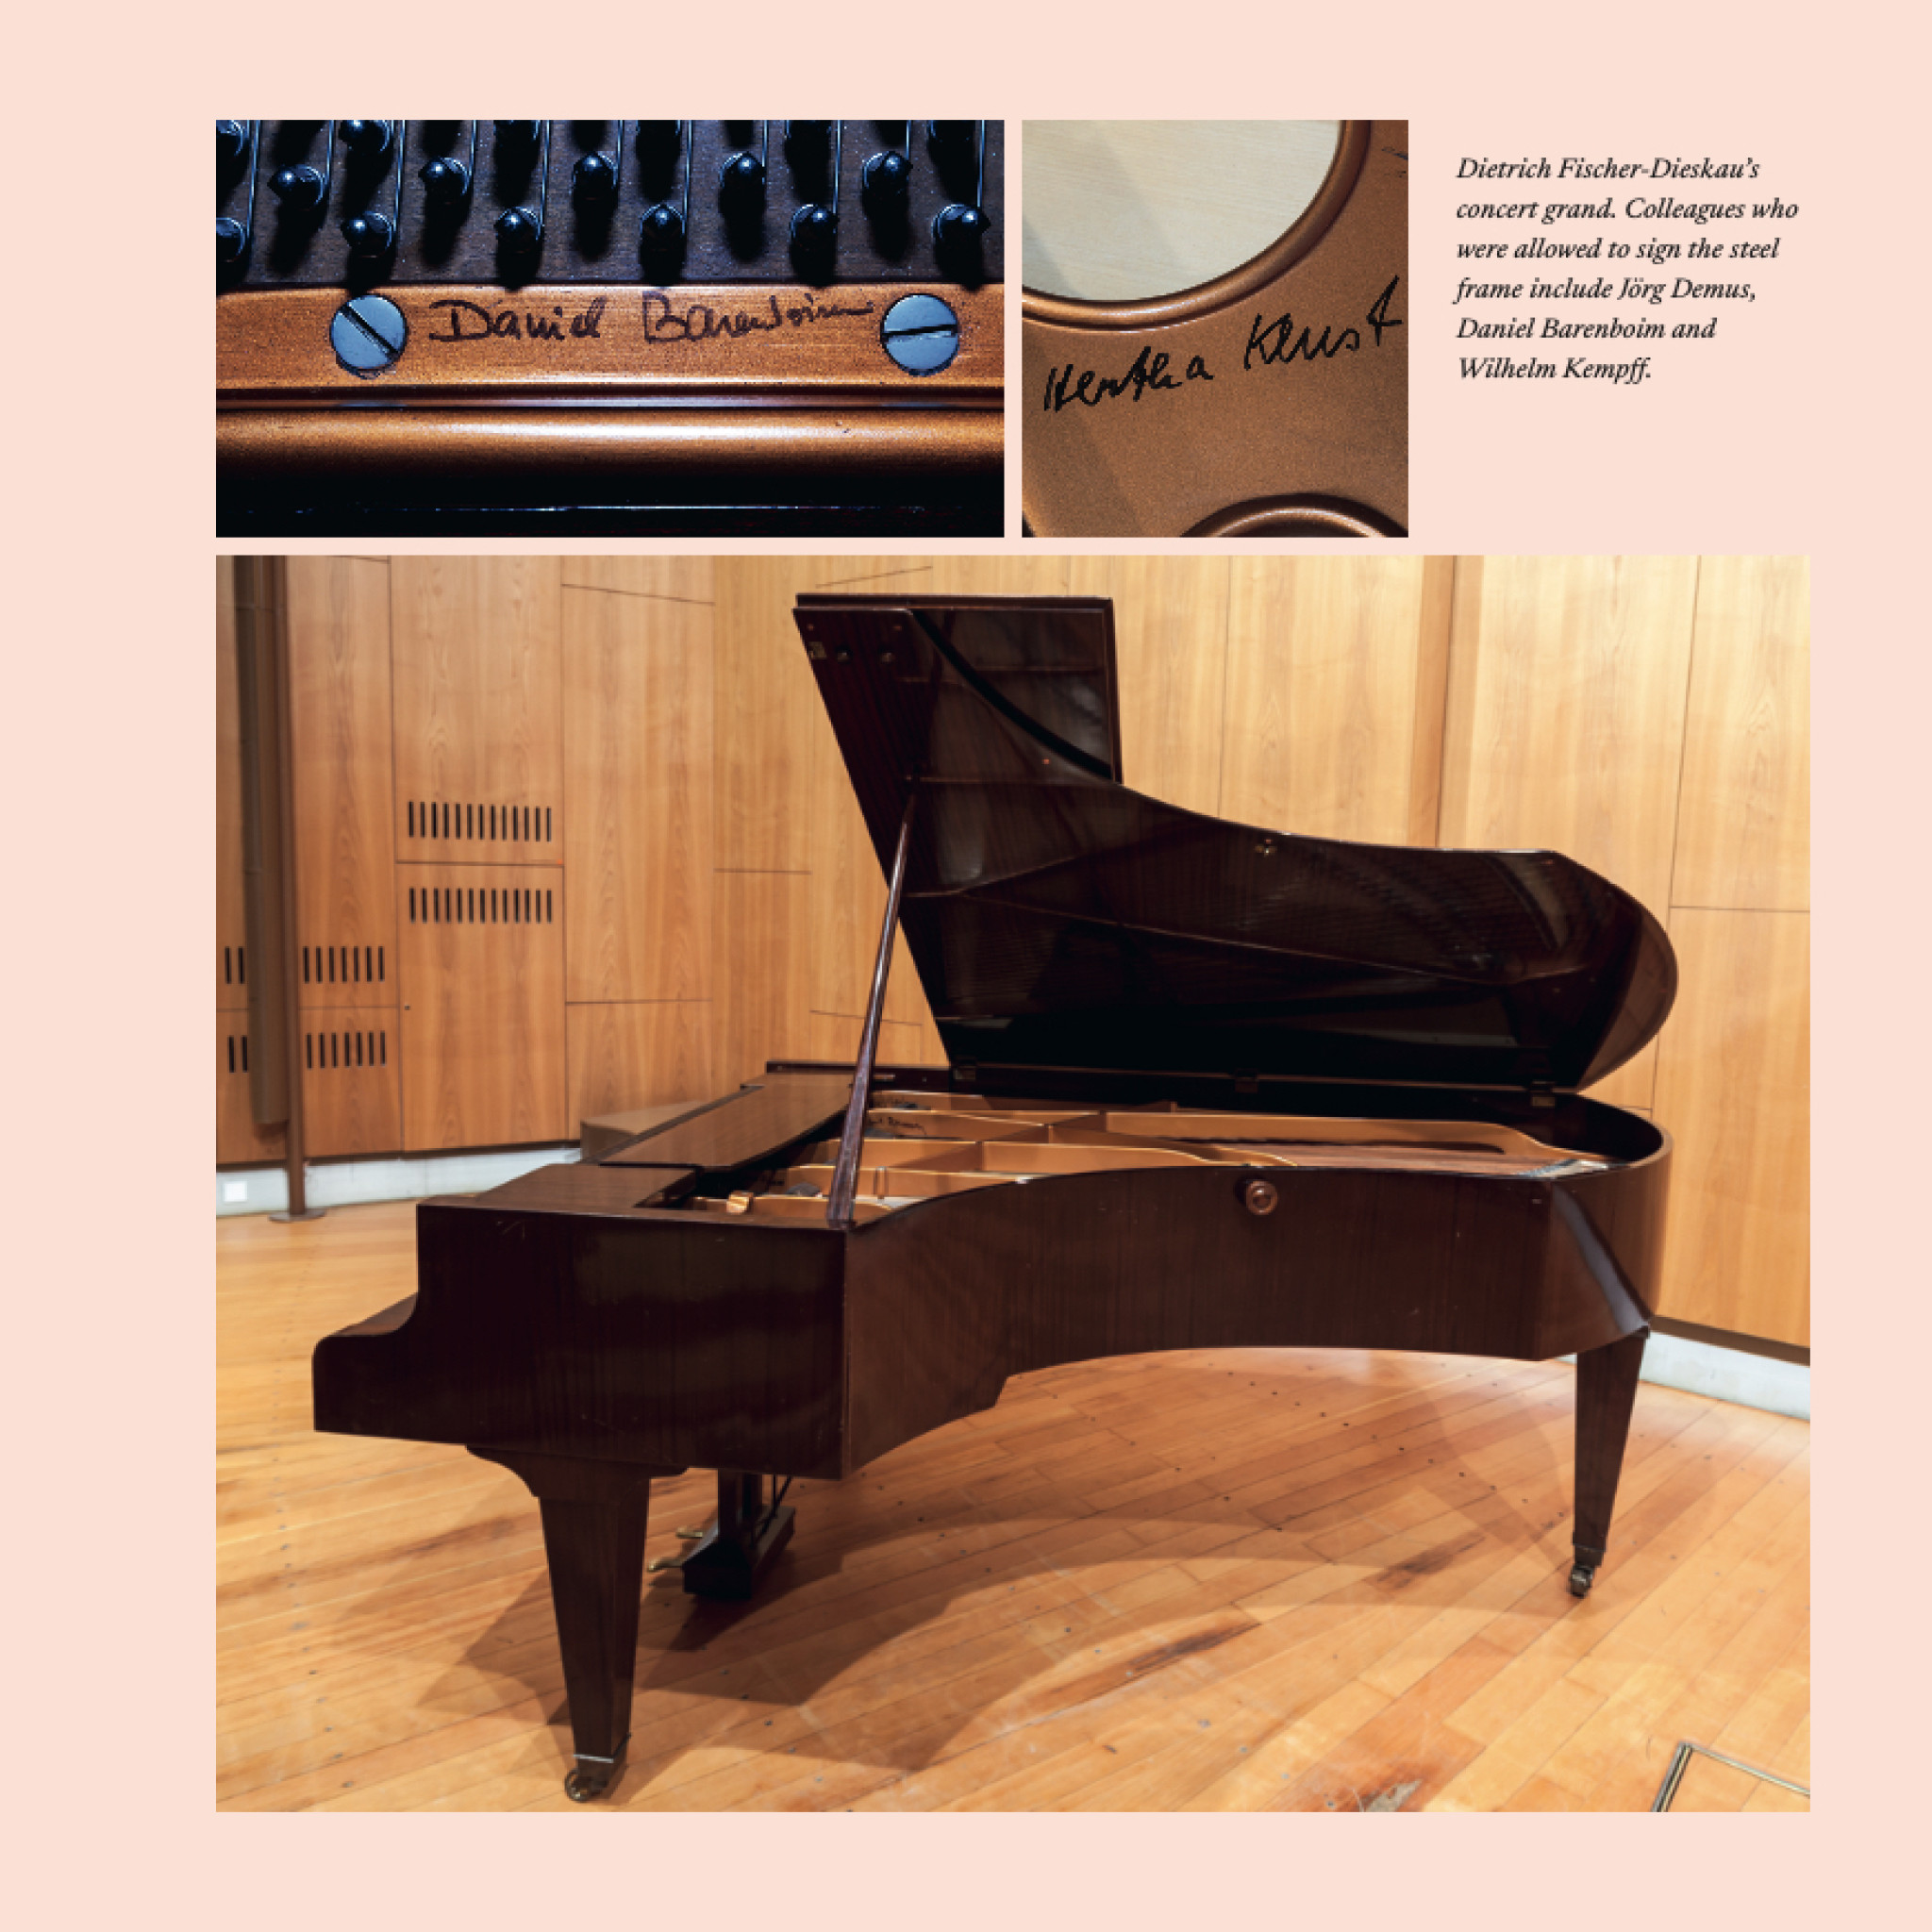 Dietrich Fischer-Dieskau - Signed Piano